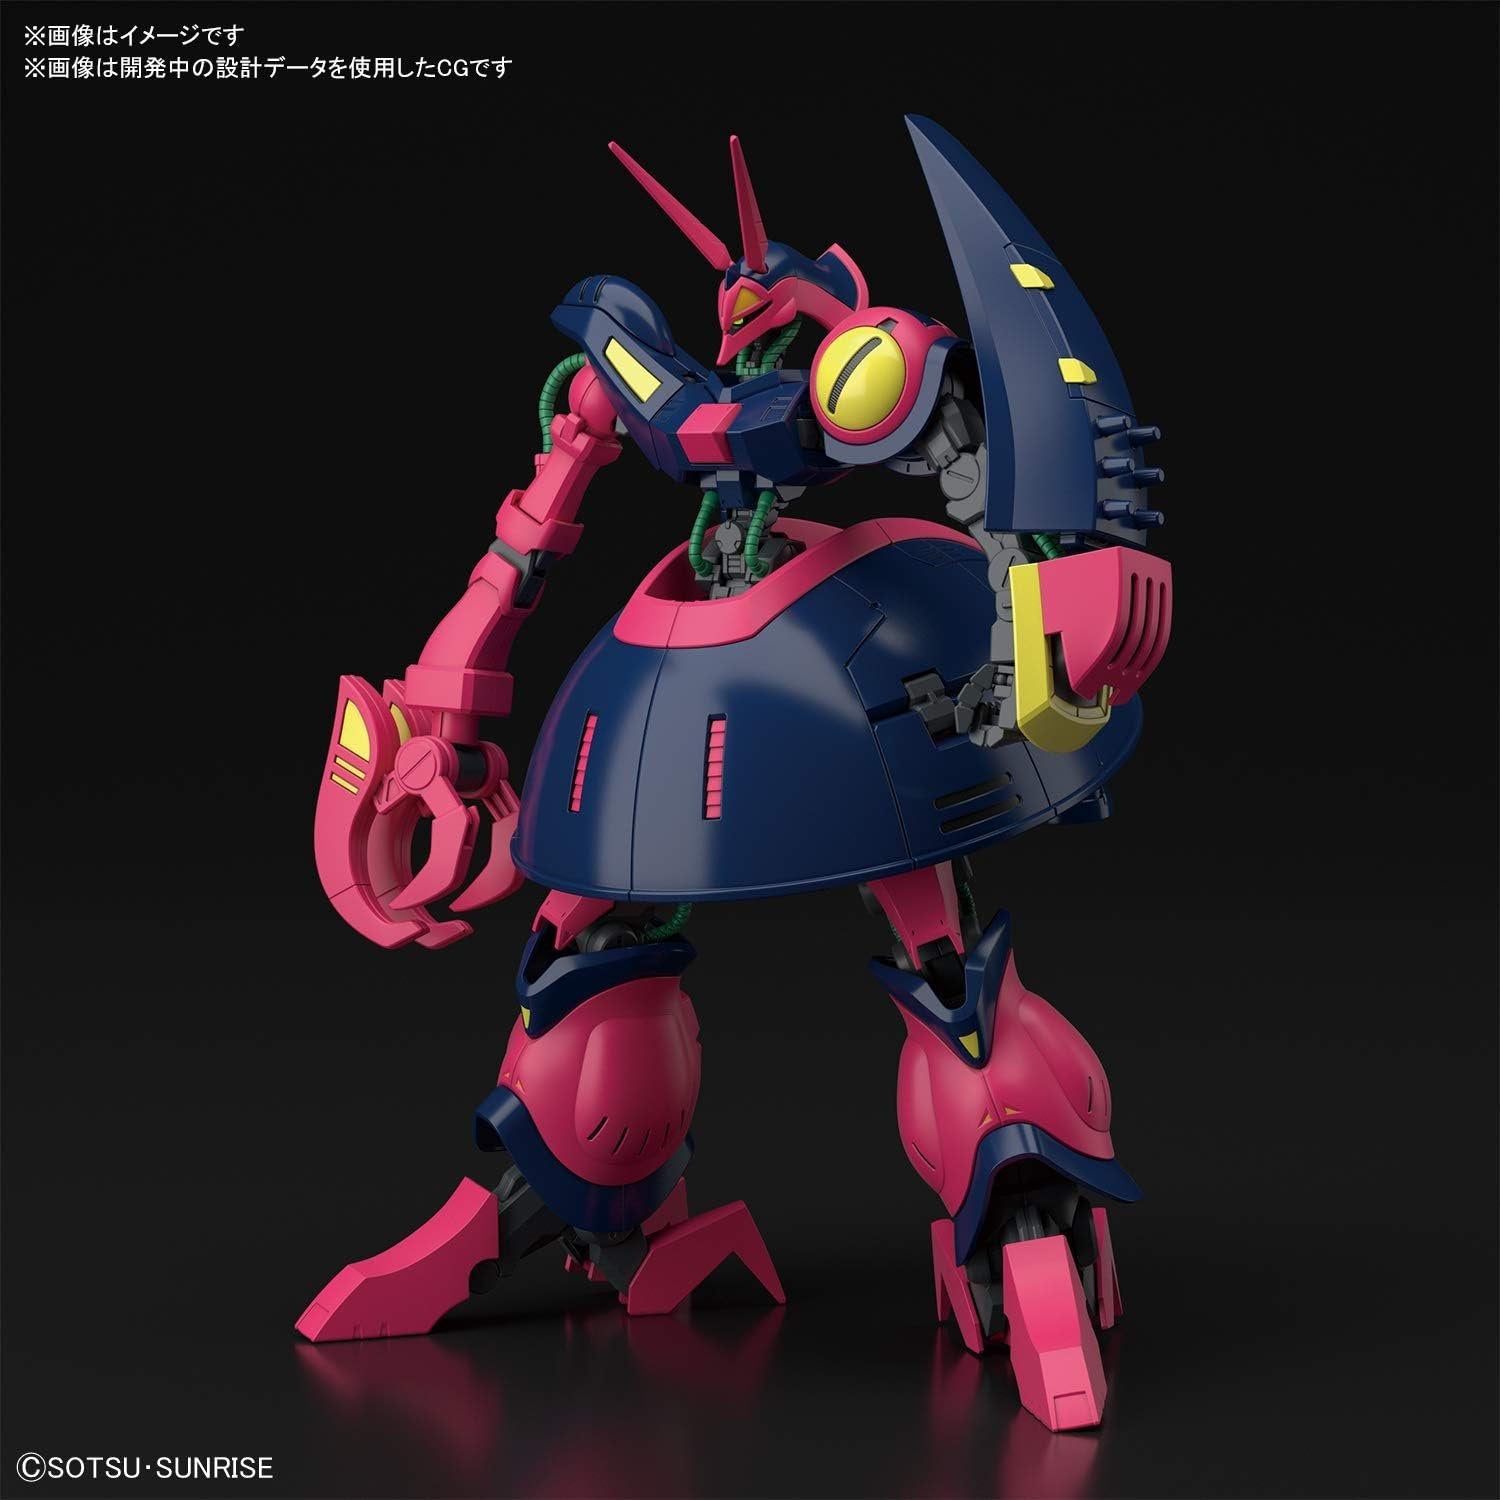 Bandai Hobby - Zeta Gundam - #235 Baund-Doc, Bandai Spirits HGUC 1/144